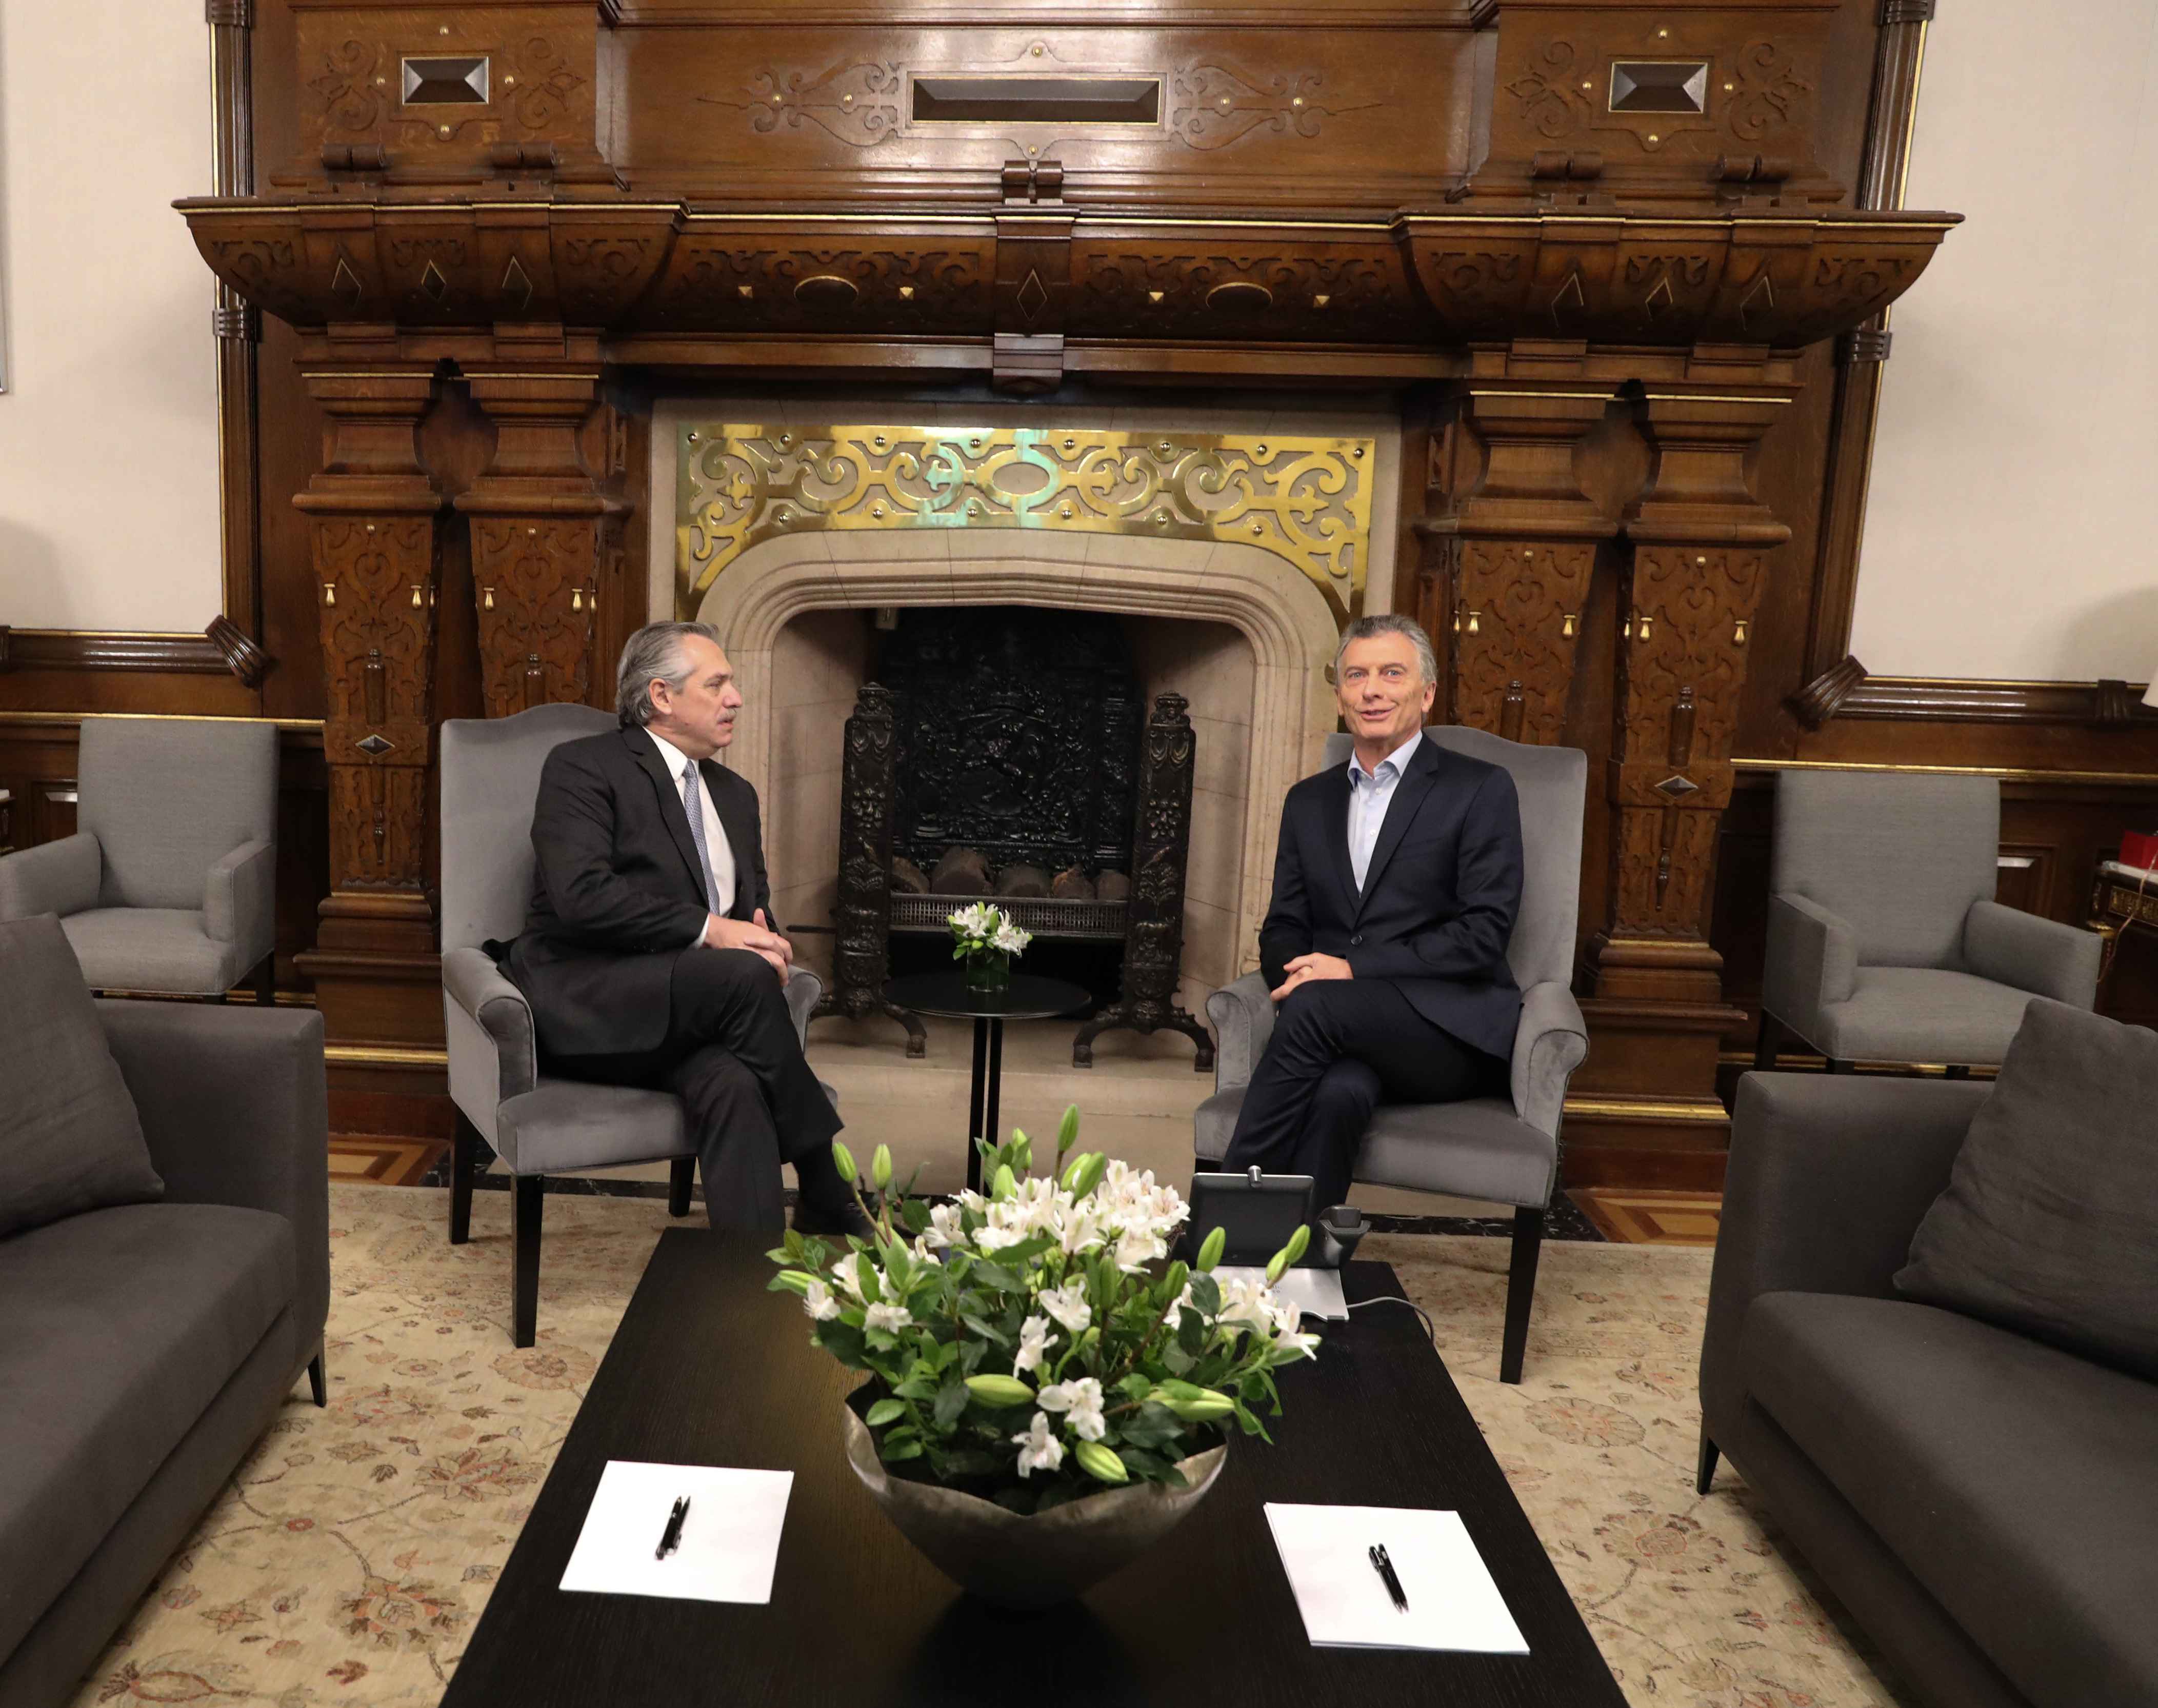 Encontro entre o presidente eleito, Alberto Fernández, e o presidente Mauricio Macri